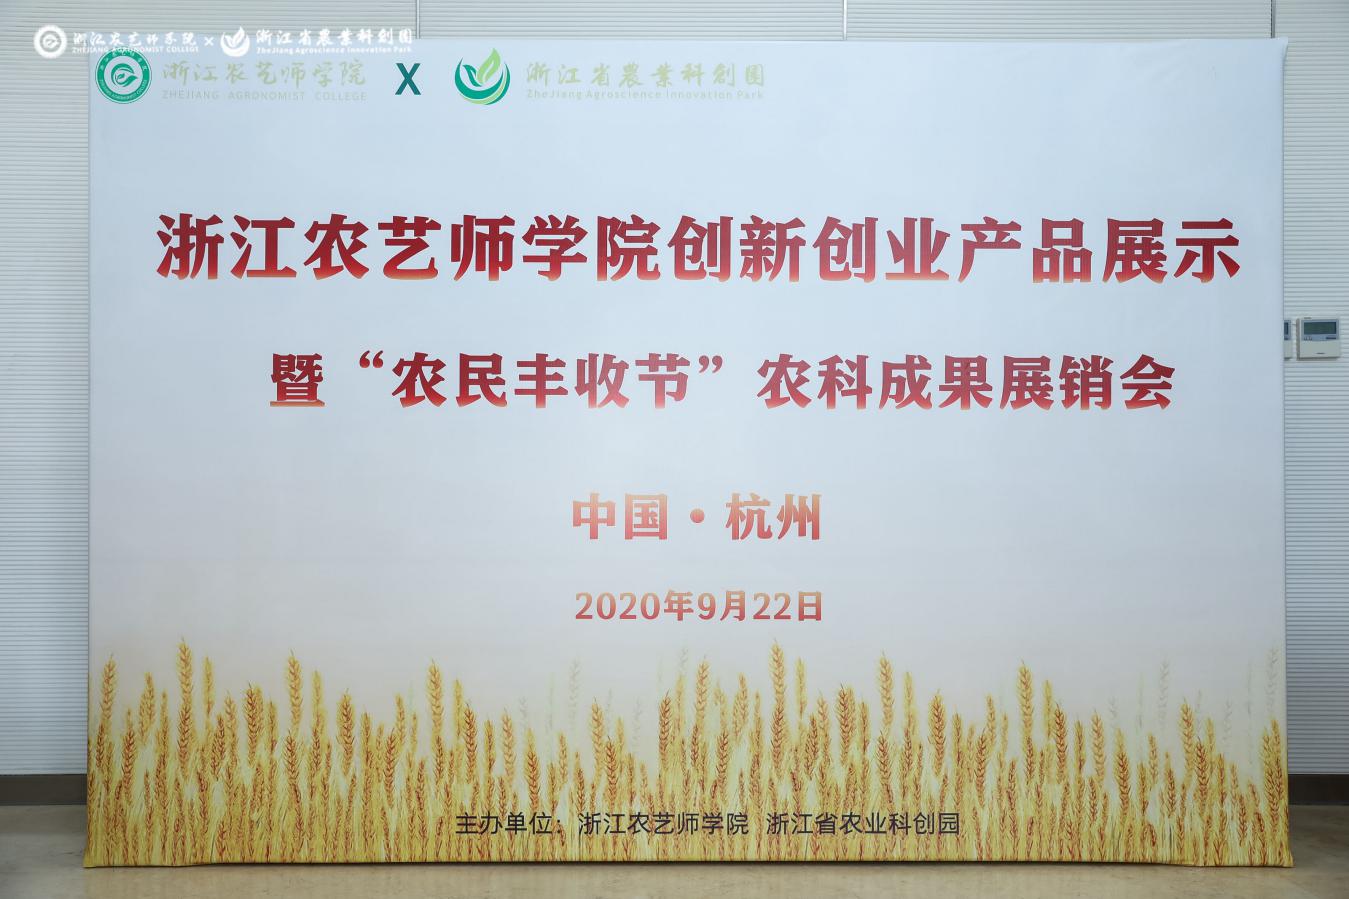 在开学季办展销会 “浙里新农人”展出200余项农产品